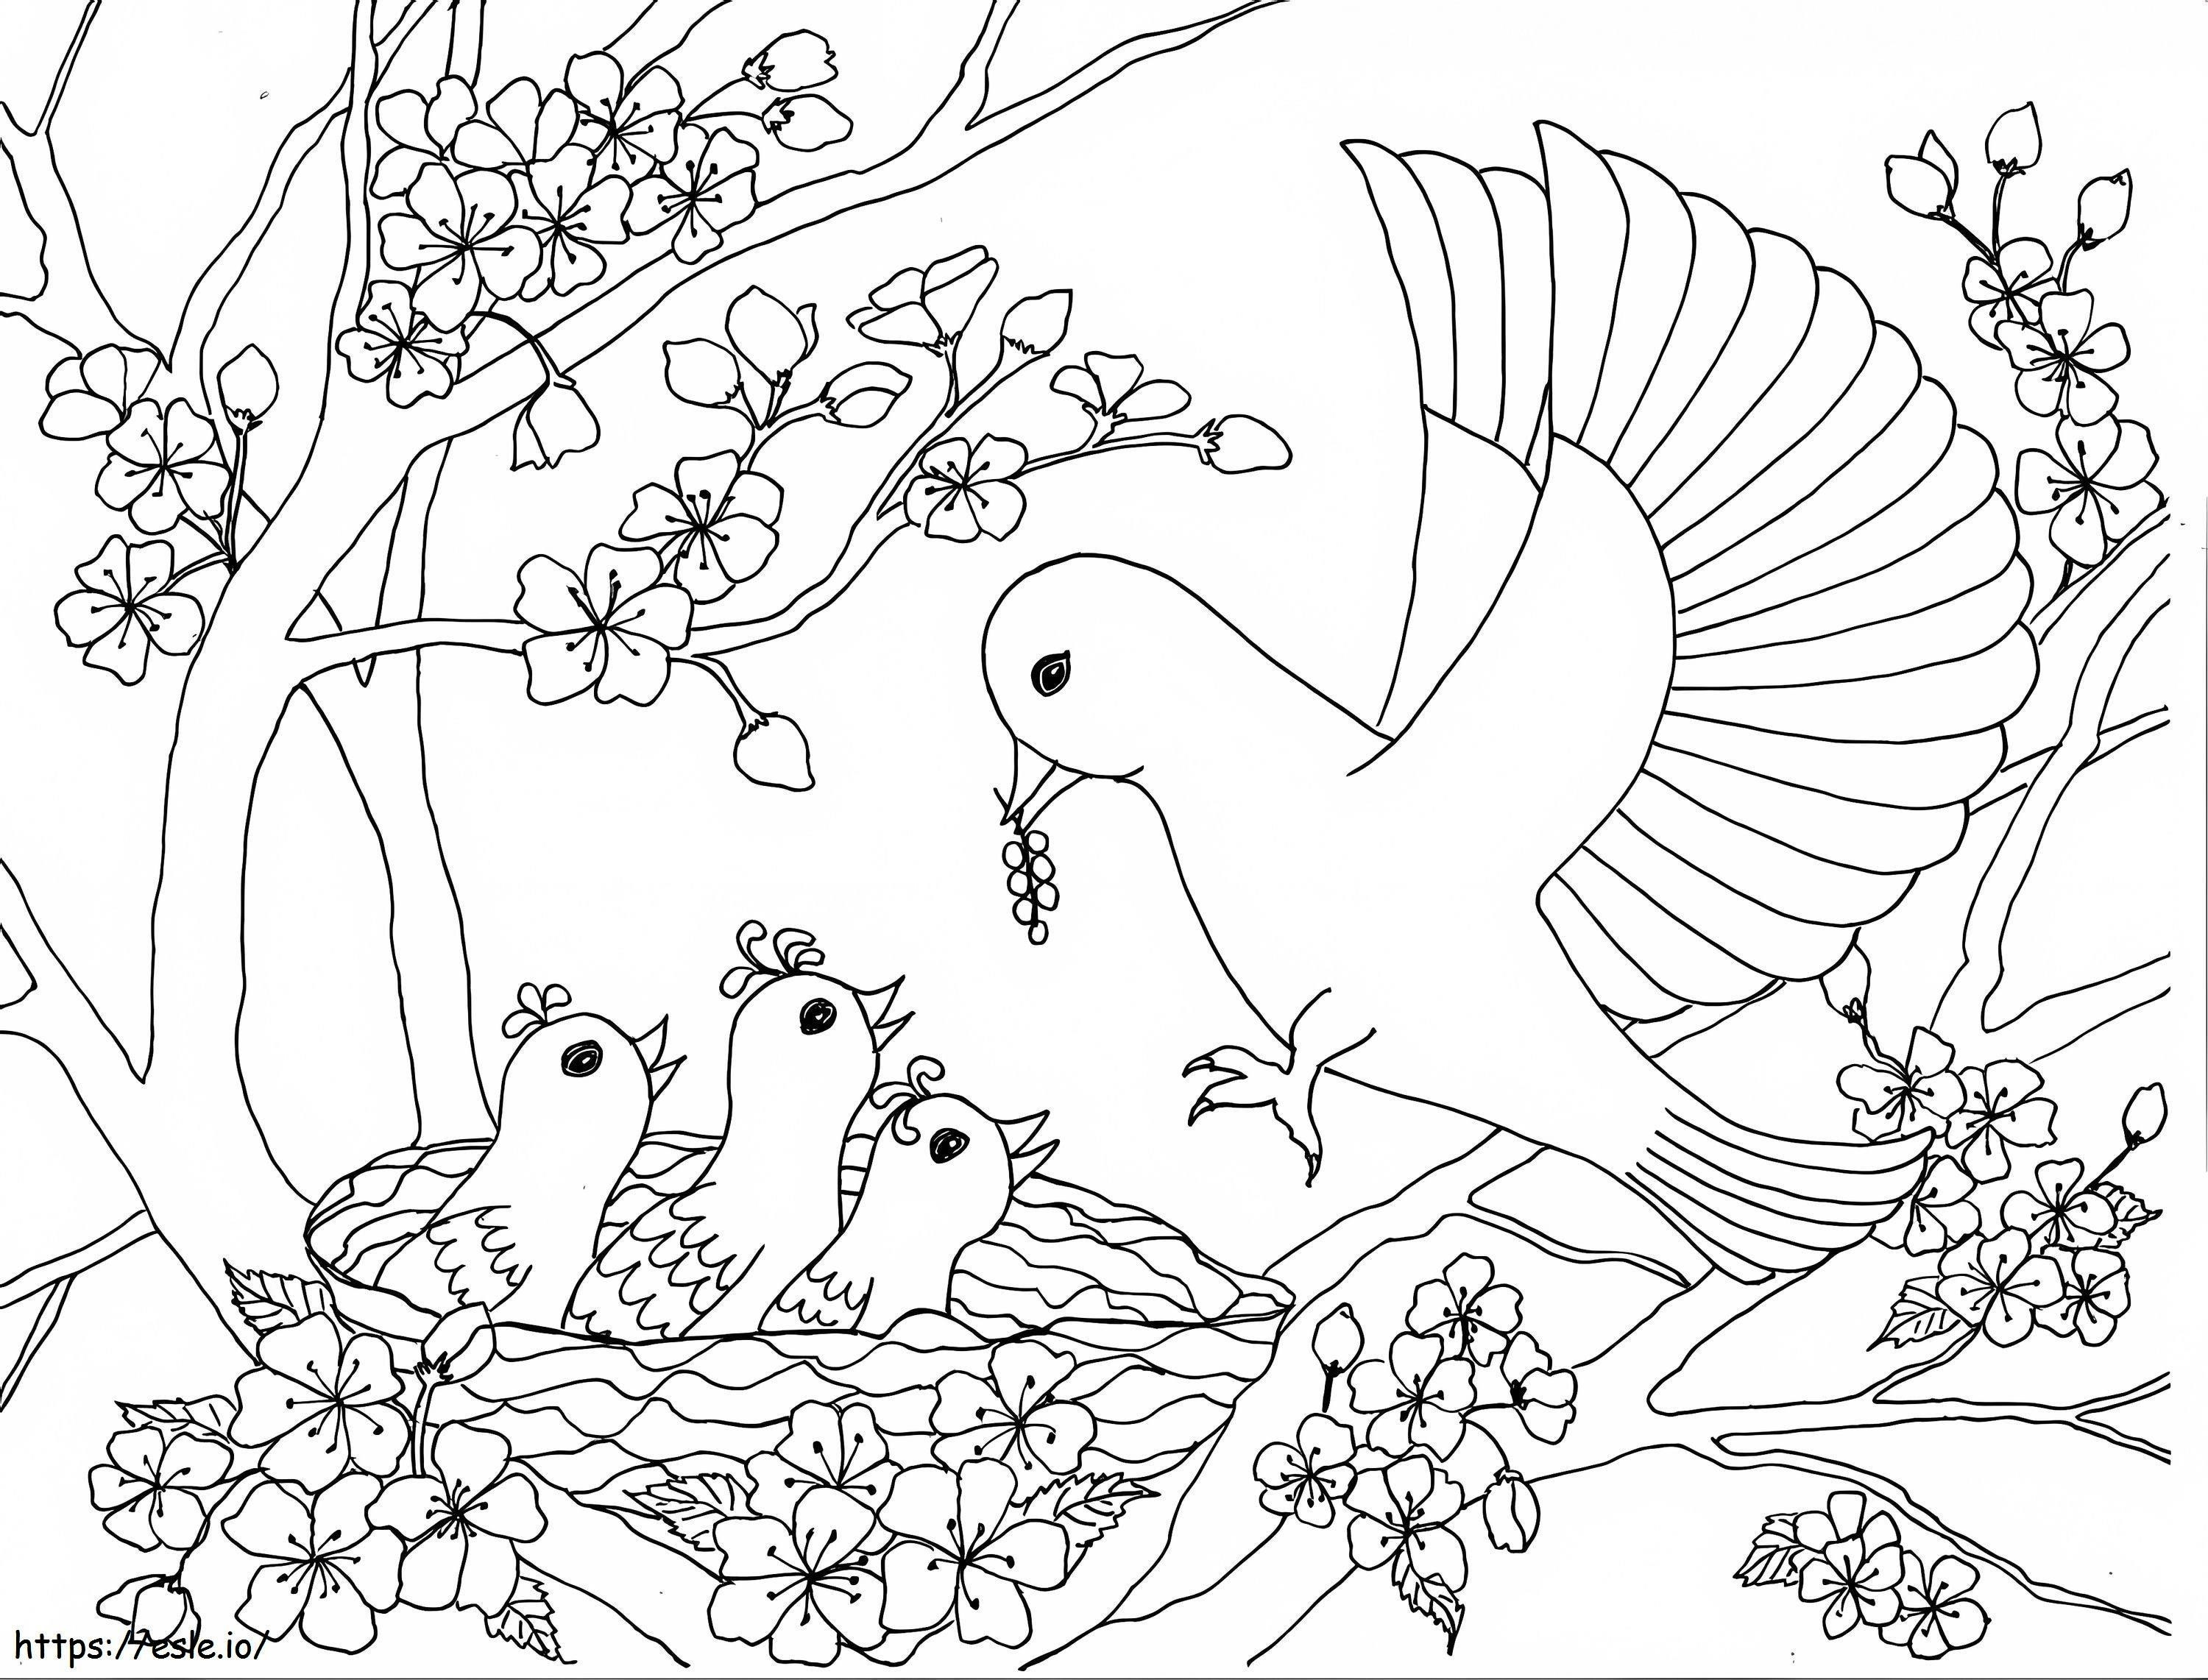 Kiraz Çiçeği Ağacındaki Kuş Ailesi boyama